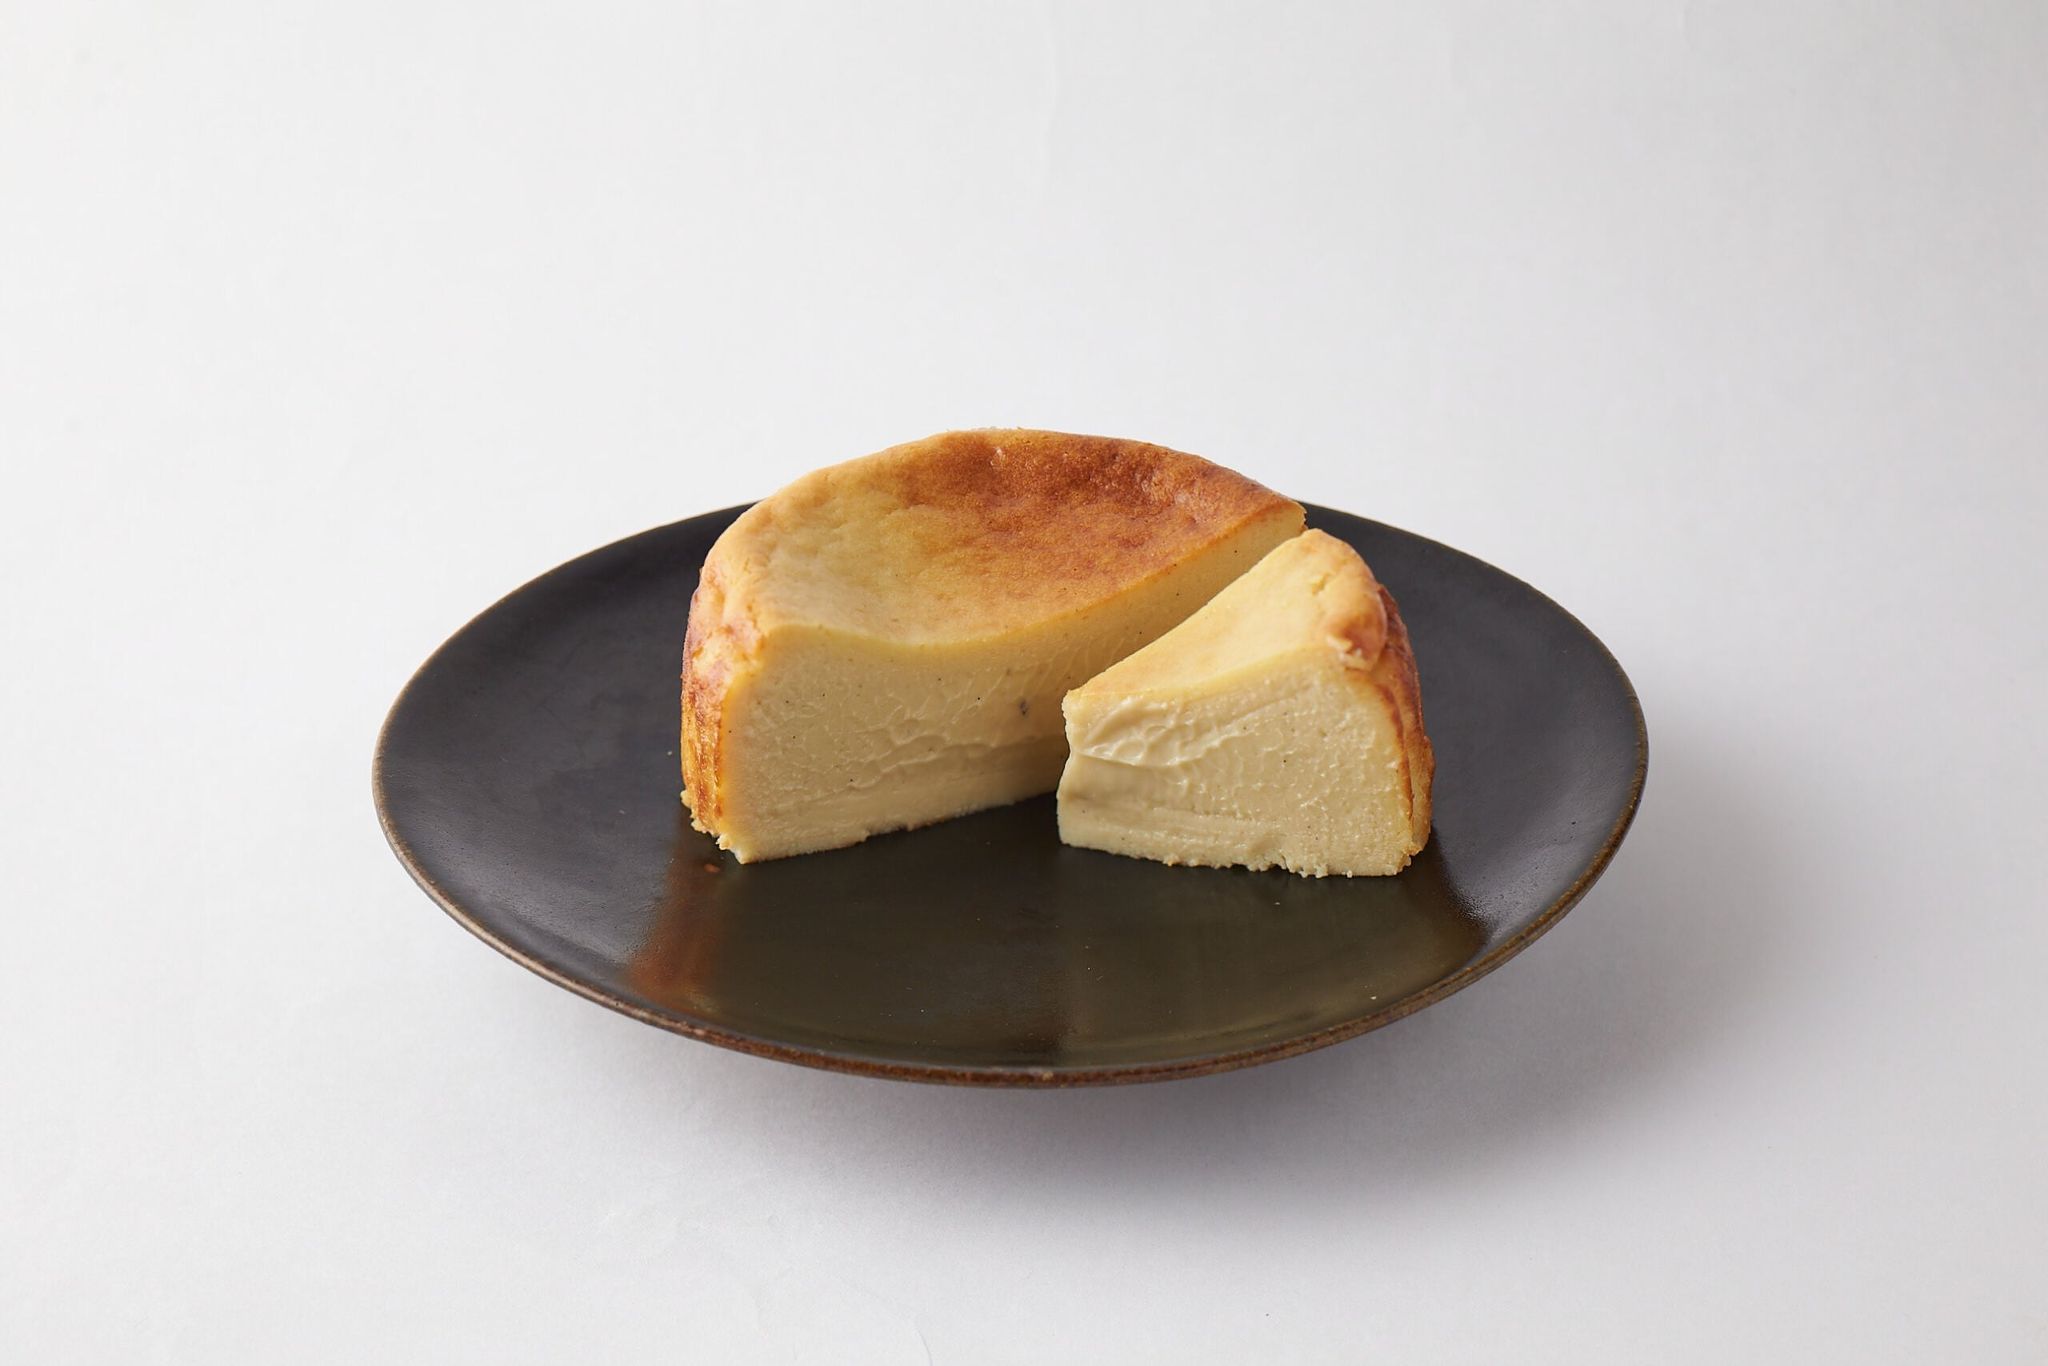 ル・フルーヴさんにお作りいただく「エリタージュカカオのチーズケーキ」